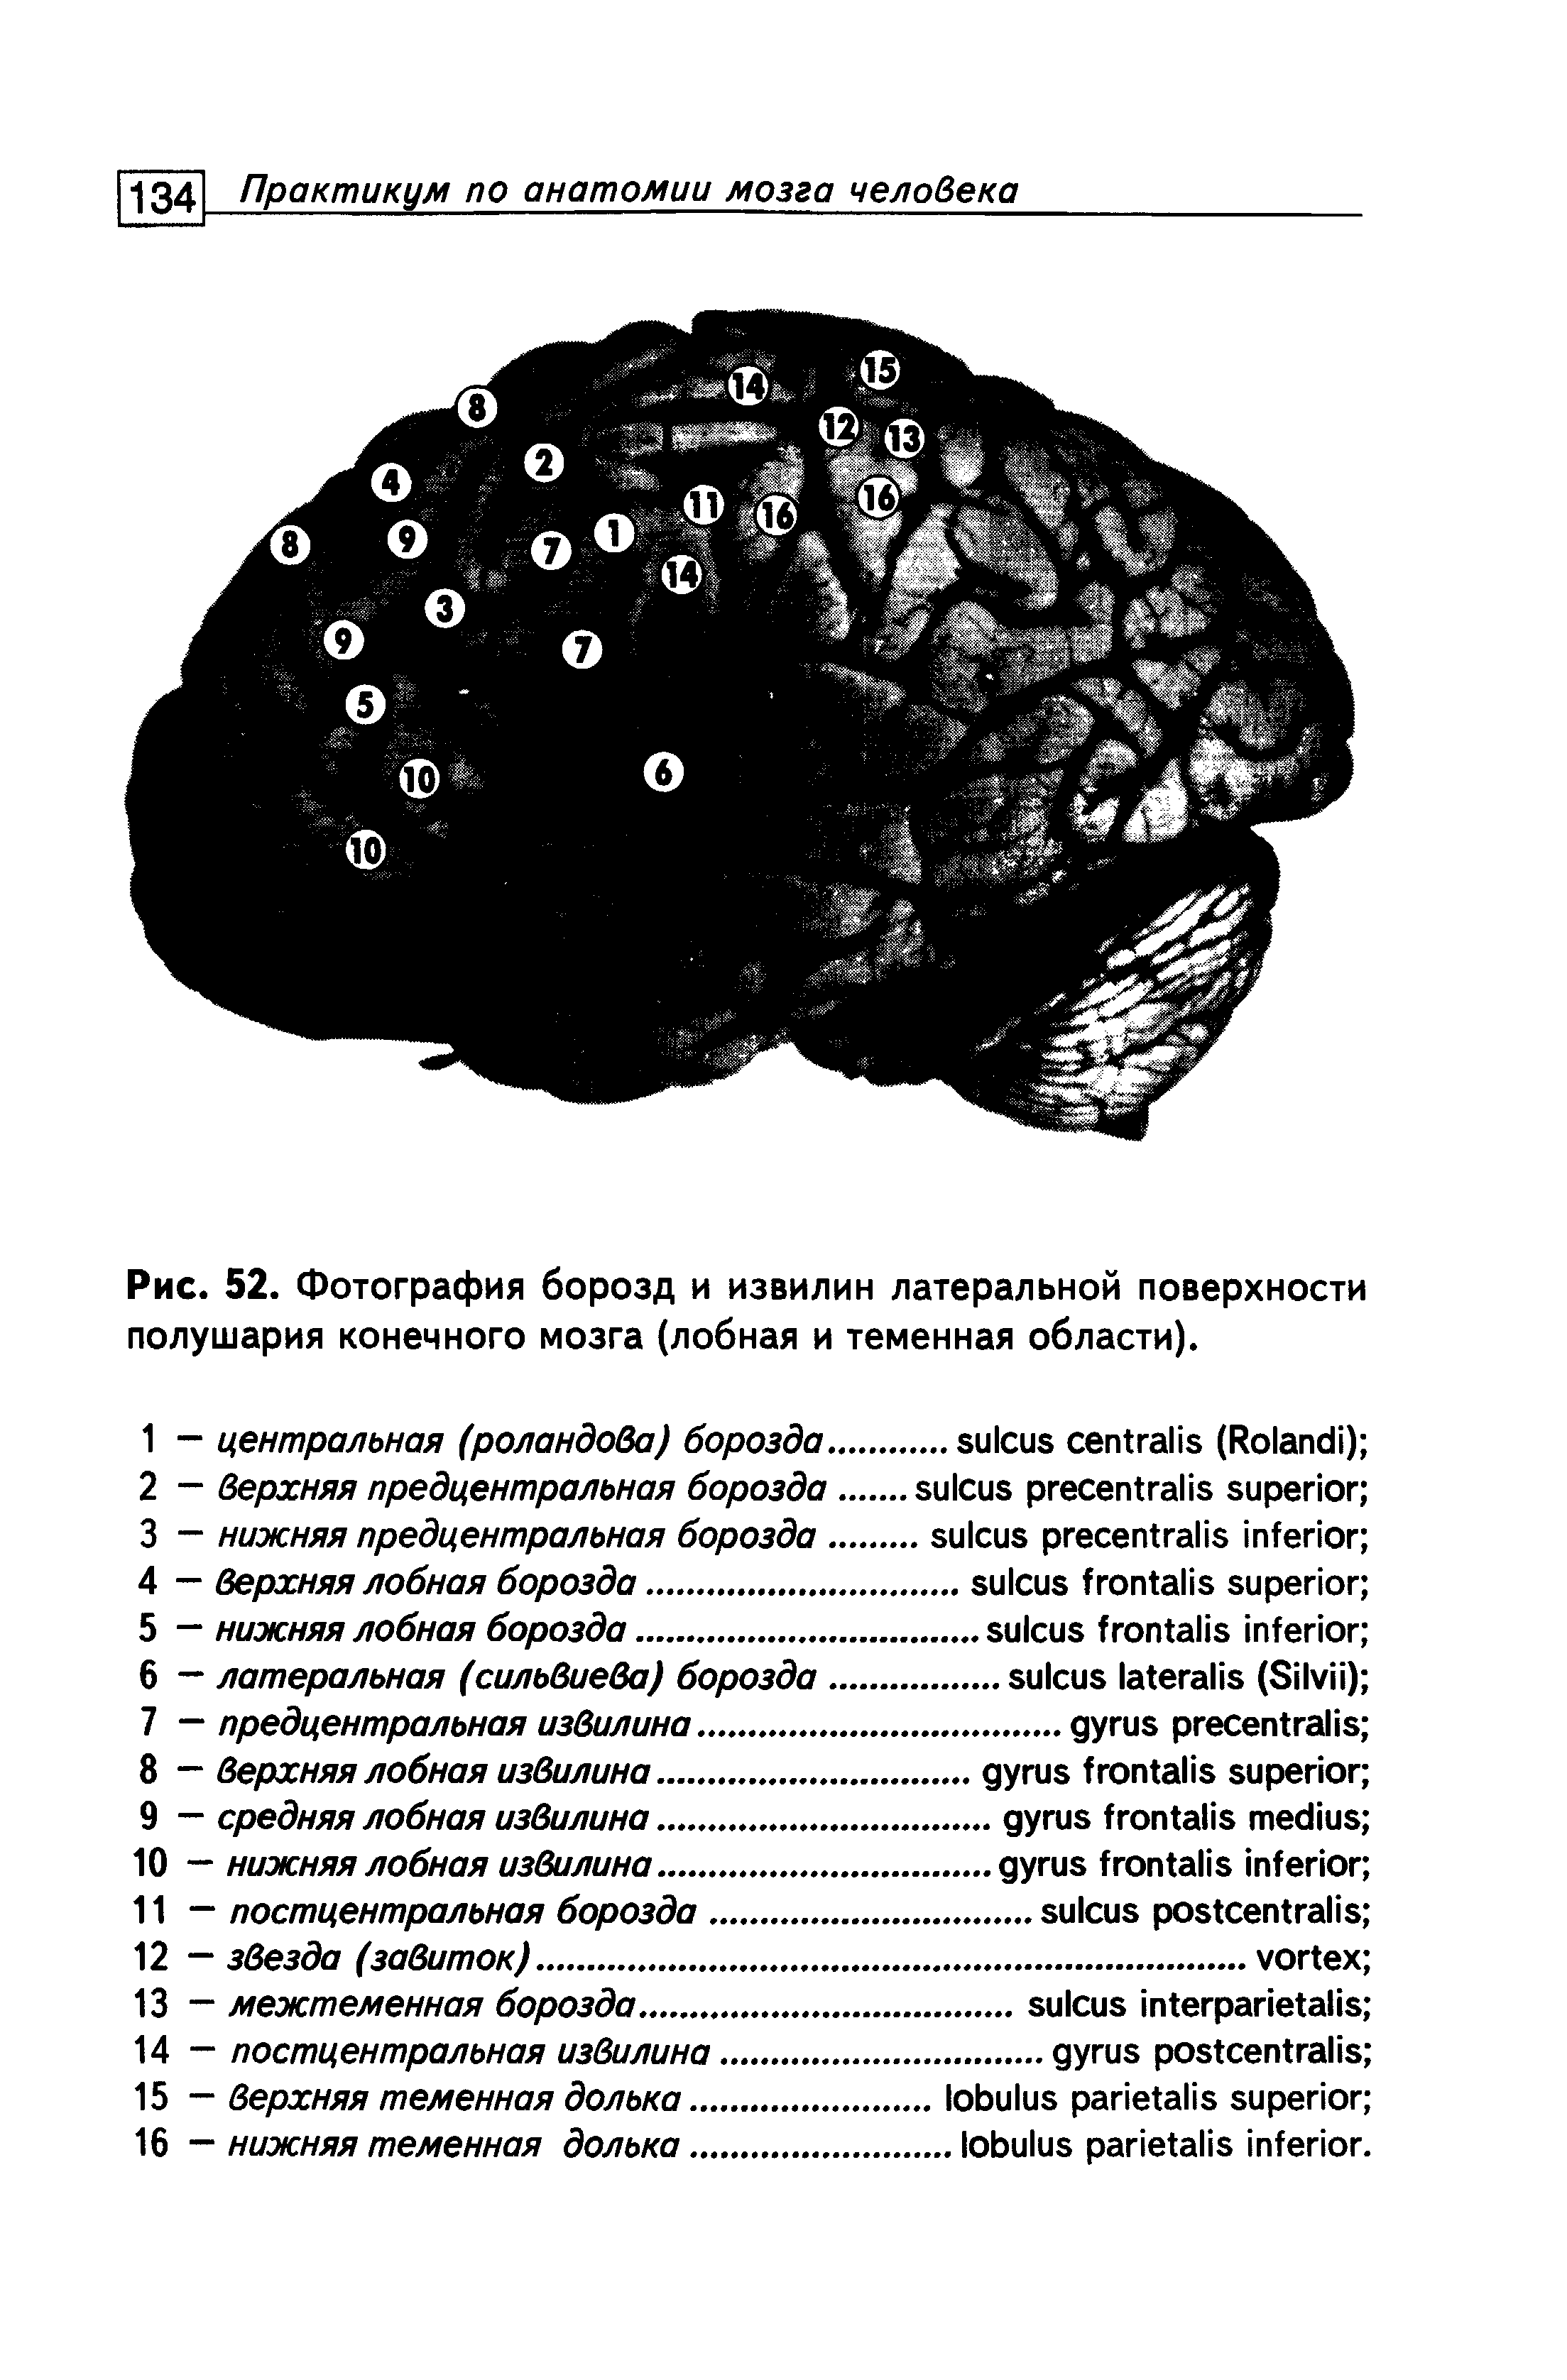 Рис. 52. Фотография борозд и извилин латеральной поверхности полушария конечного мозга (лобная и теменная области).